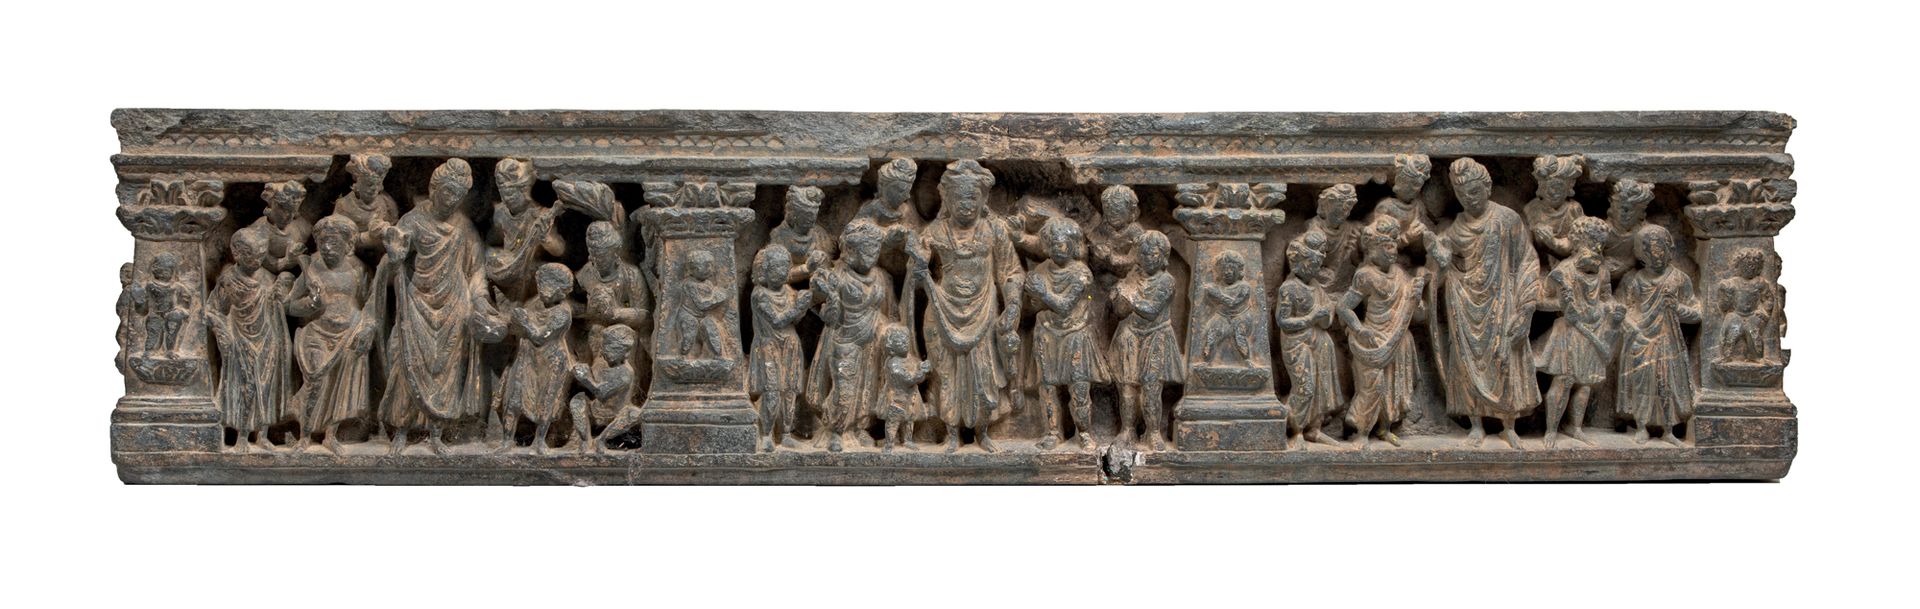 Null 
Friso de Gandhara que representa episodios de la vida de Buda Esquisto



&hellip;